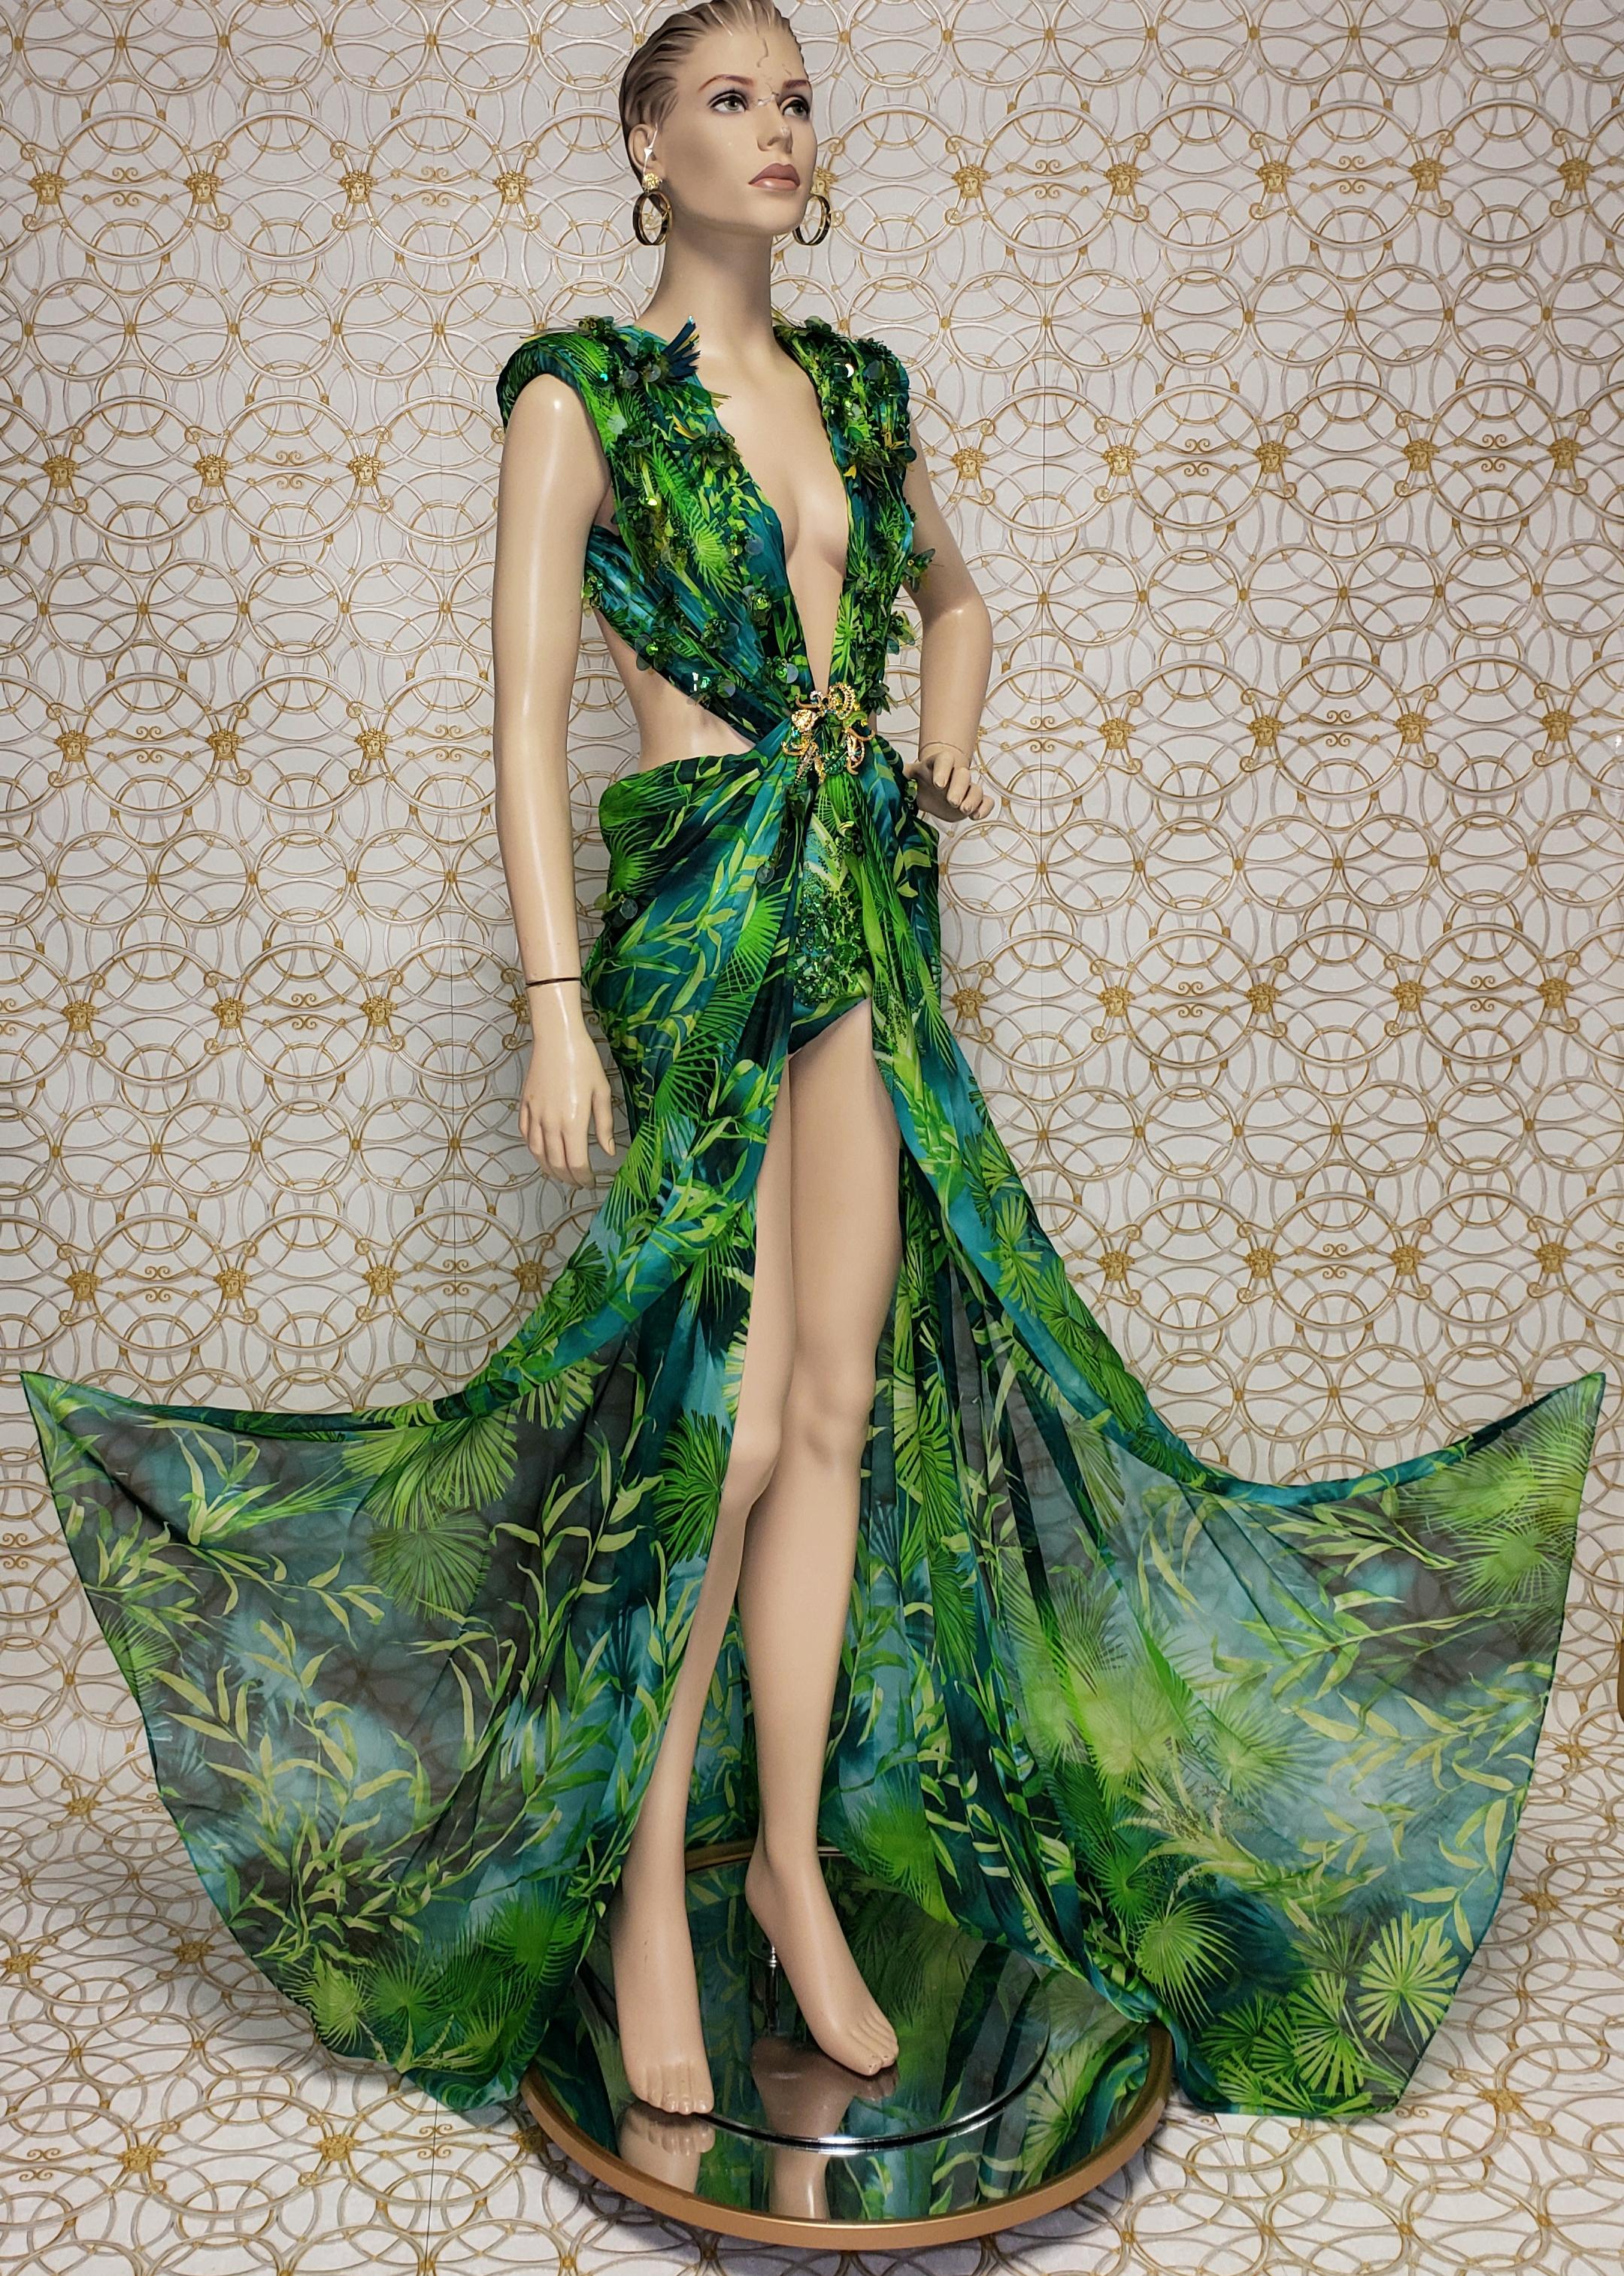 Black S/S 2020 Versace Embellished Jungle print Finalee Dress as seen on Jen Lopez